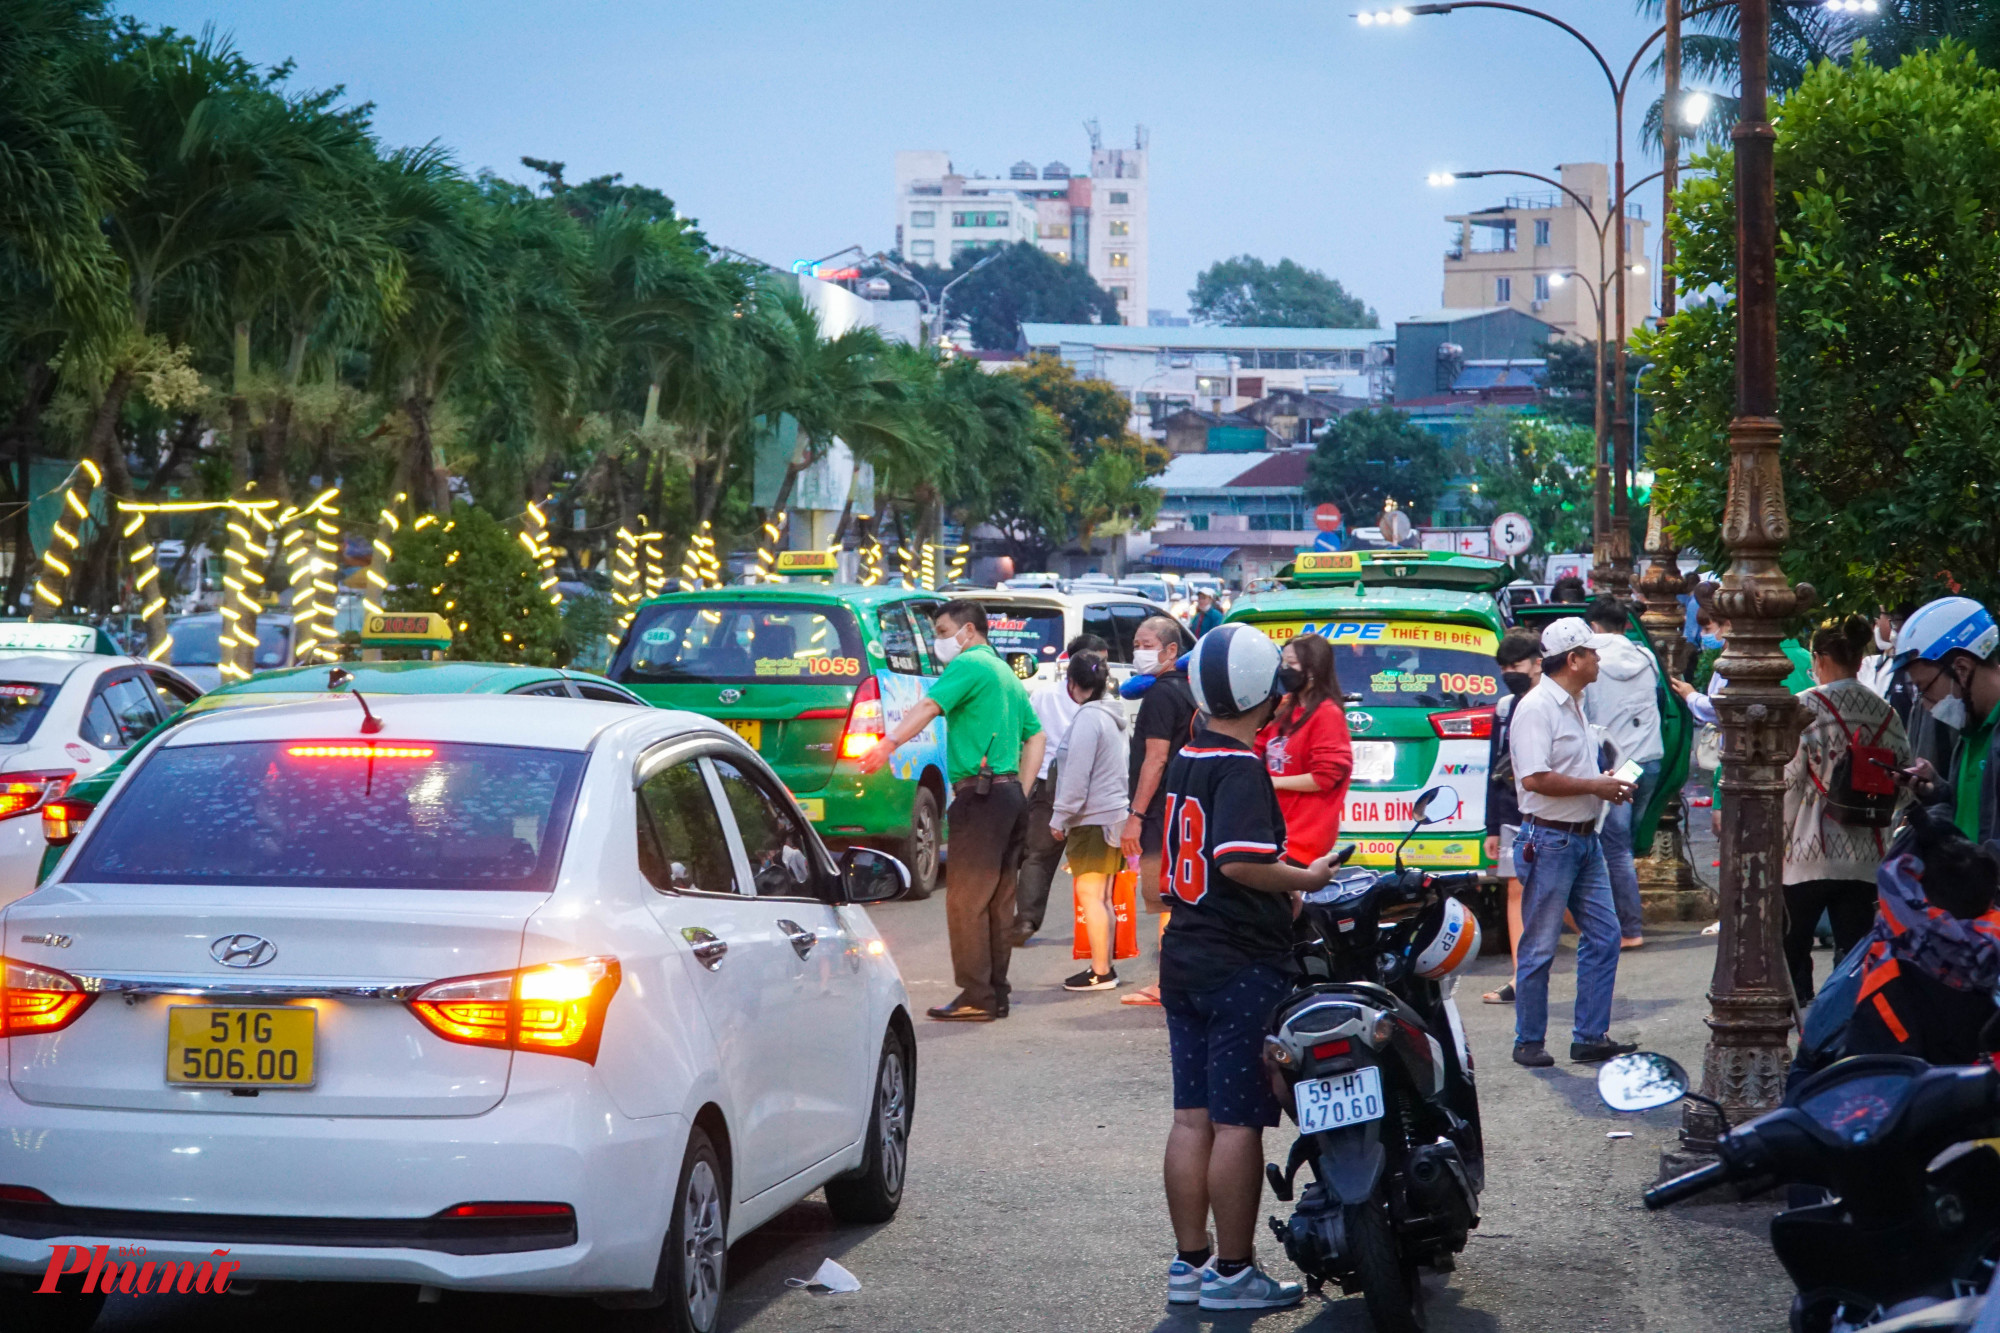 Đúng giờ hành khách đến, các xe taxi, xe công nghệ tập trung khá đông trước cửa nhà ga